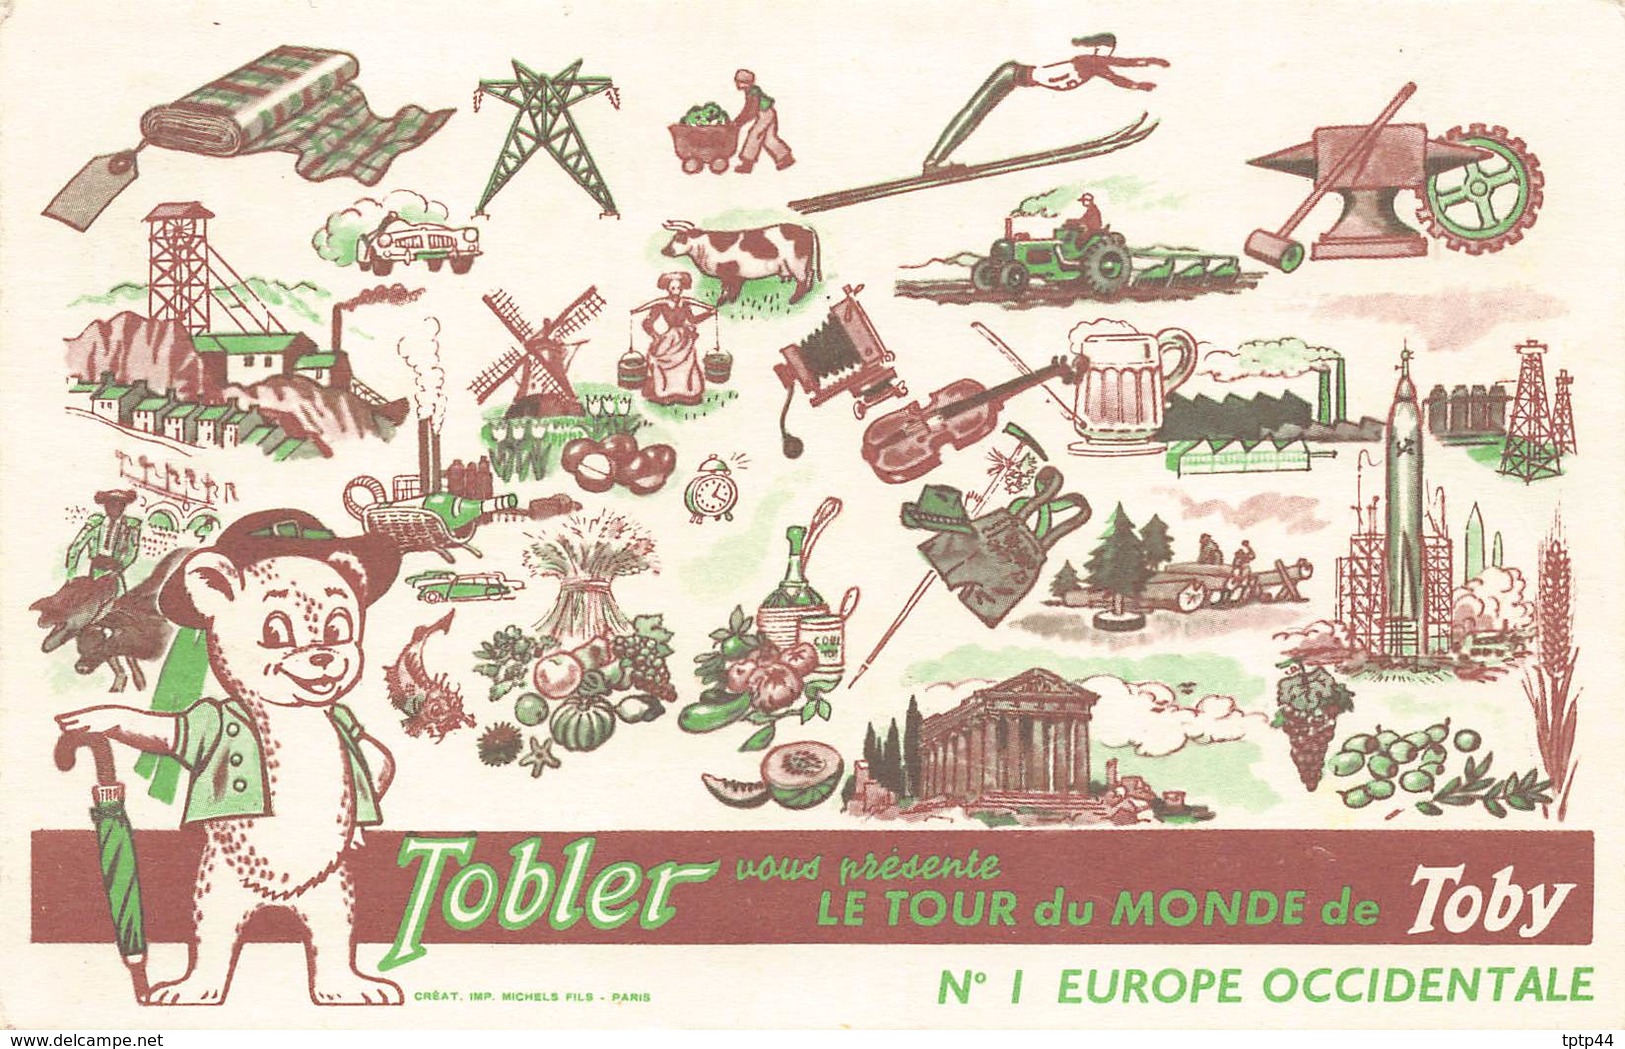 Lot de 10 Cartes Publicité du Chocolat TOBLER - Le Tour du Monde de TOBY